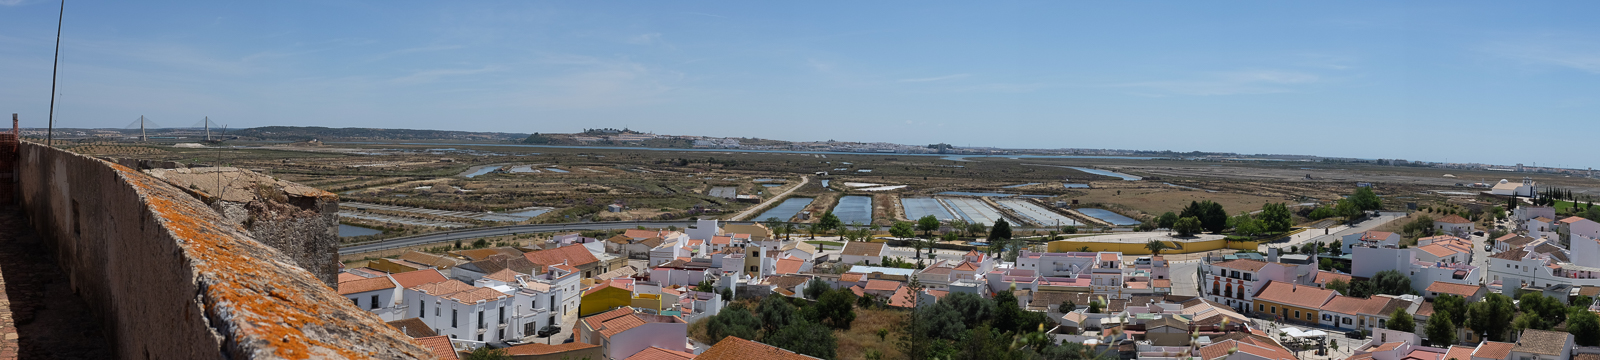 Dag05-Algarve-007-DSCF1818